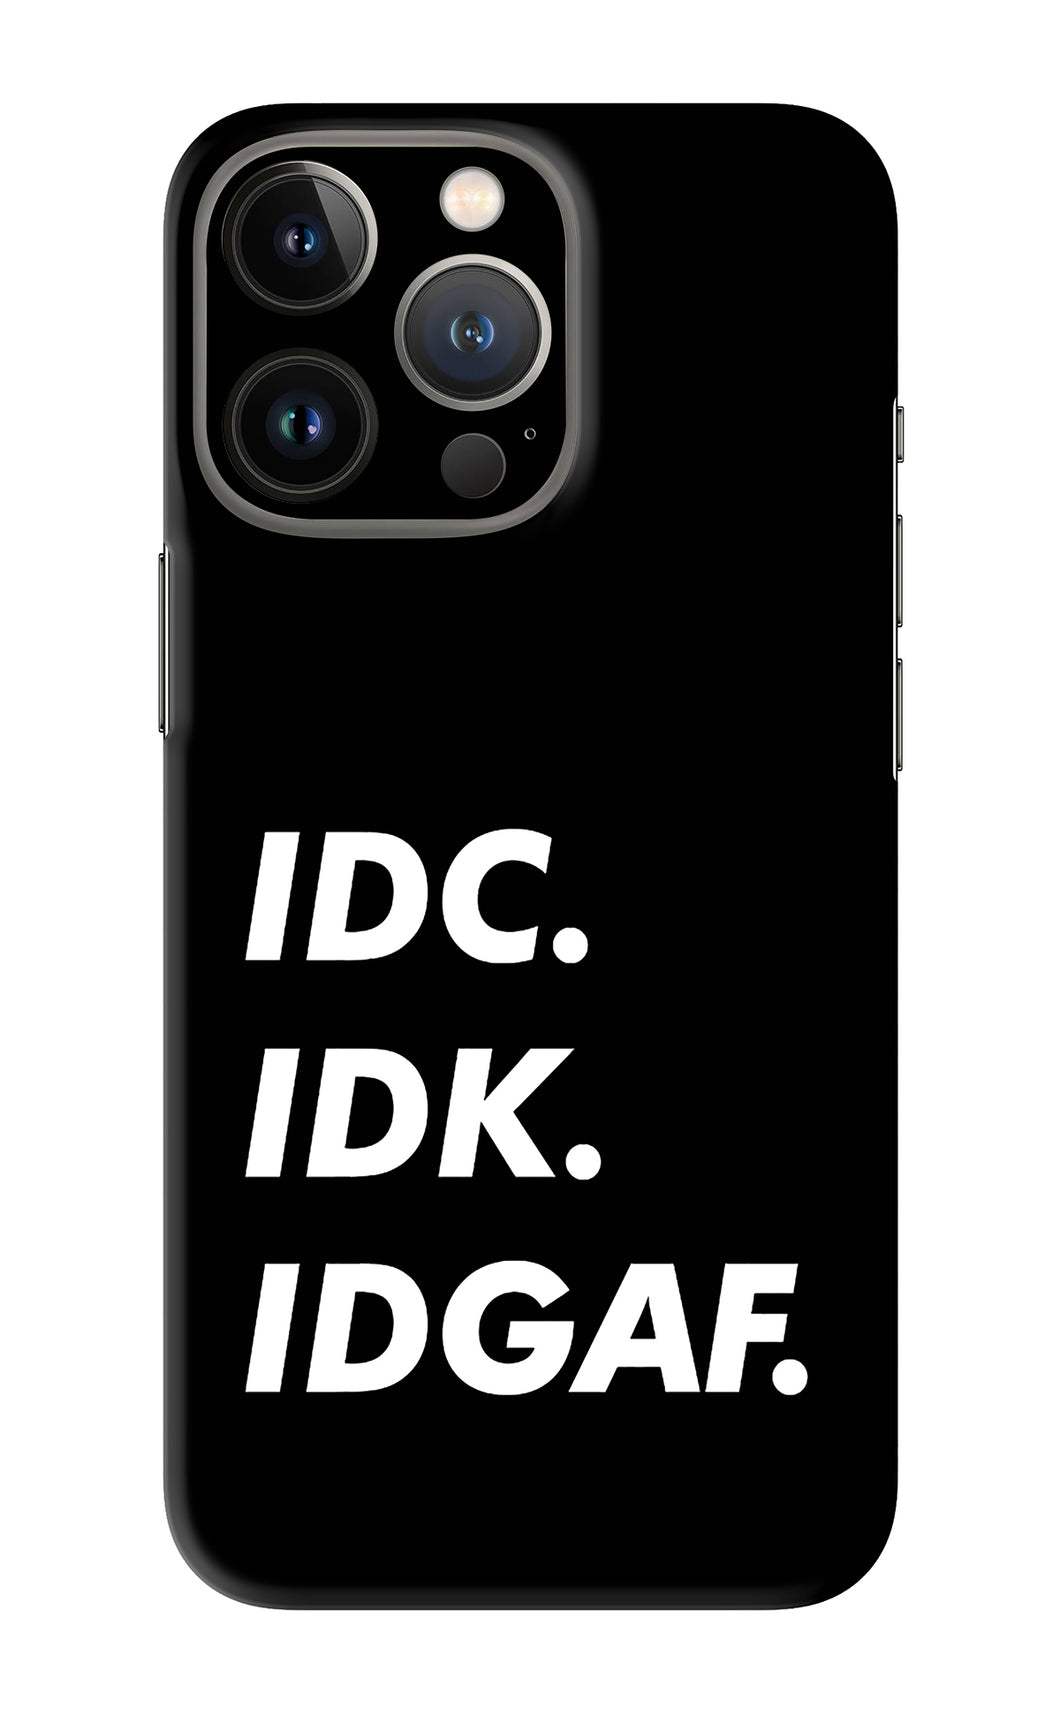 Idc Idk Idgaf iPhone 13 Pro Max Back Skin Wrap